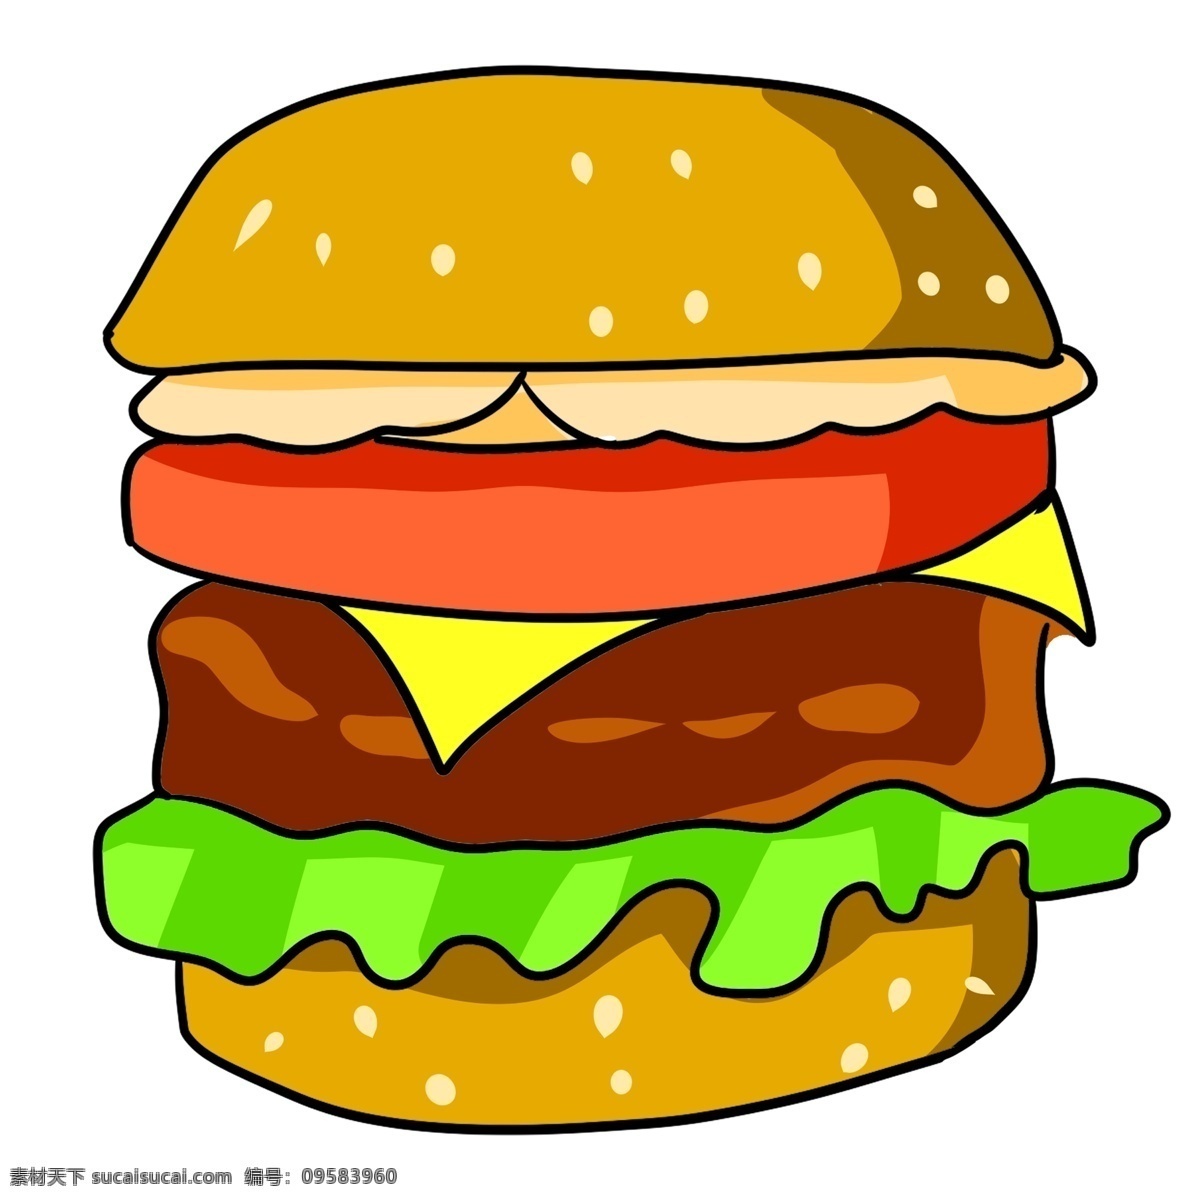 手绘汉堡 汉堡 菜单 标志 logo 图标 手绘 素描 线描 白描 装饰画 海报 矢量 封面 餐厅 餐馆 框画 挂画 插画 美食 食物 快餐 食材食物